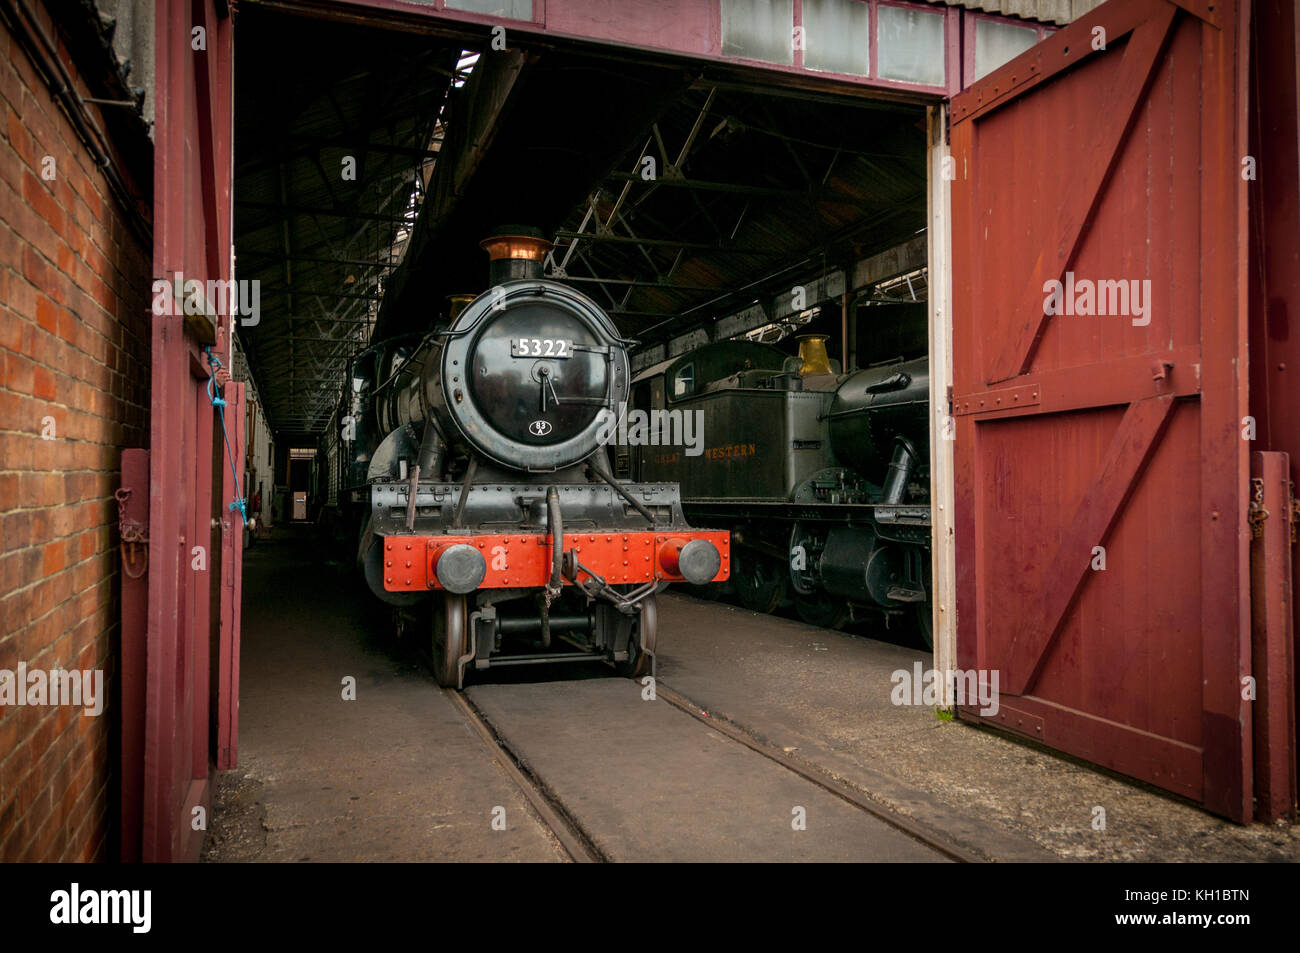 Great Western locomotore ferroviario n. 5322, didcot railway Centre Regno Unito Foto Stock